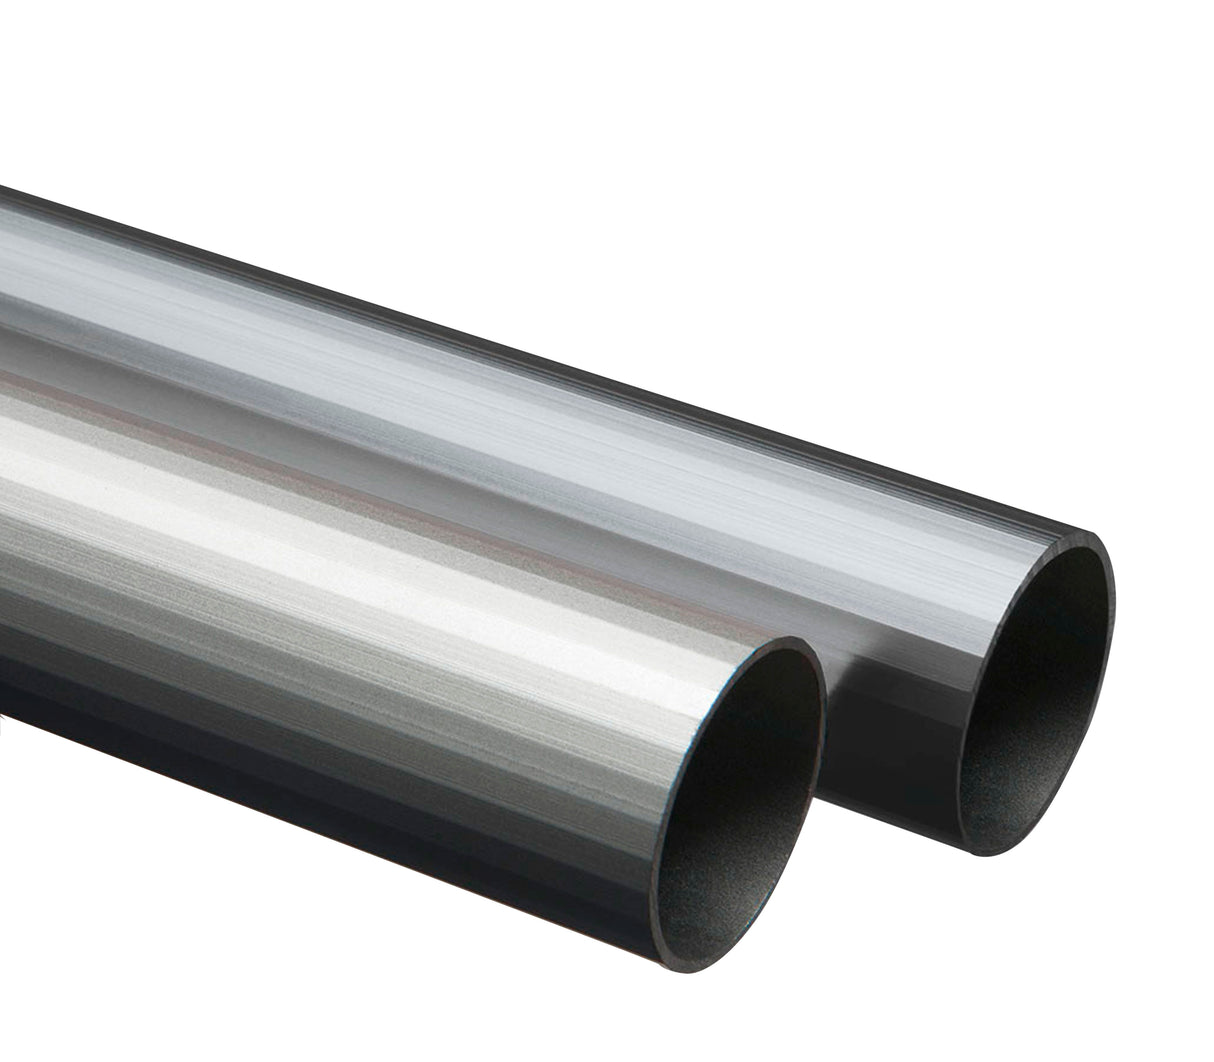 Tubo redondo de aluminio 13mm x 3m Tauro